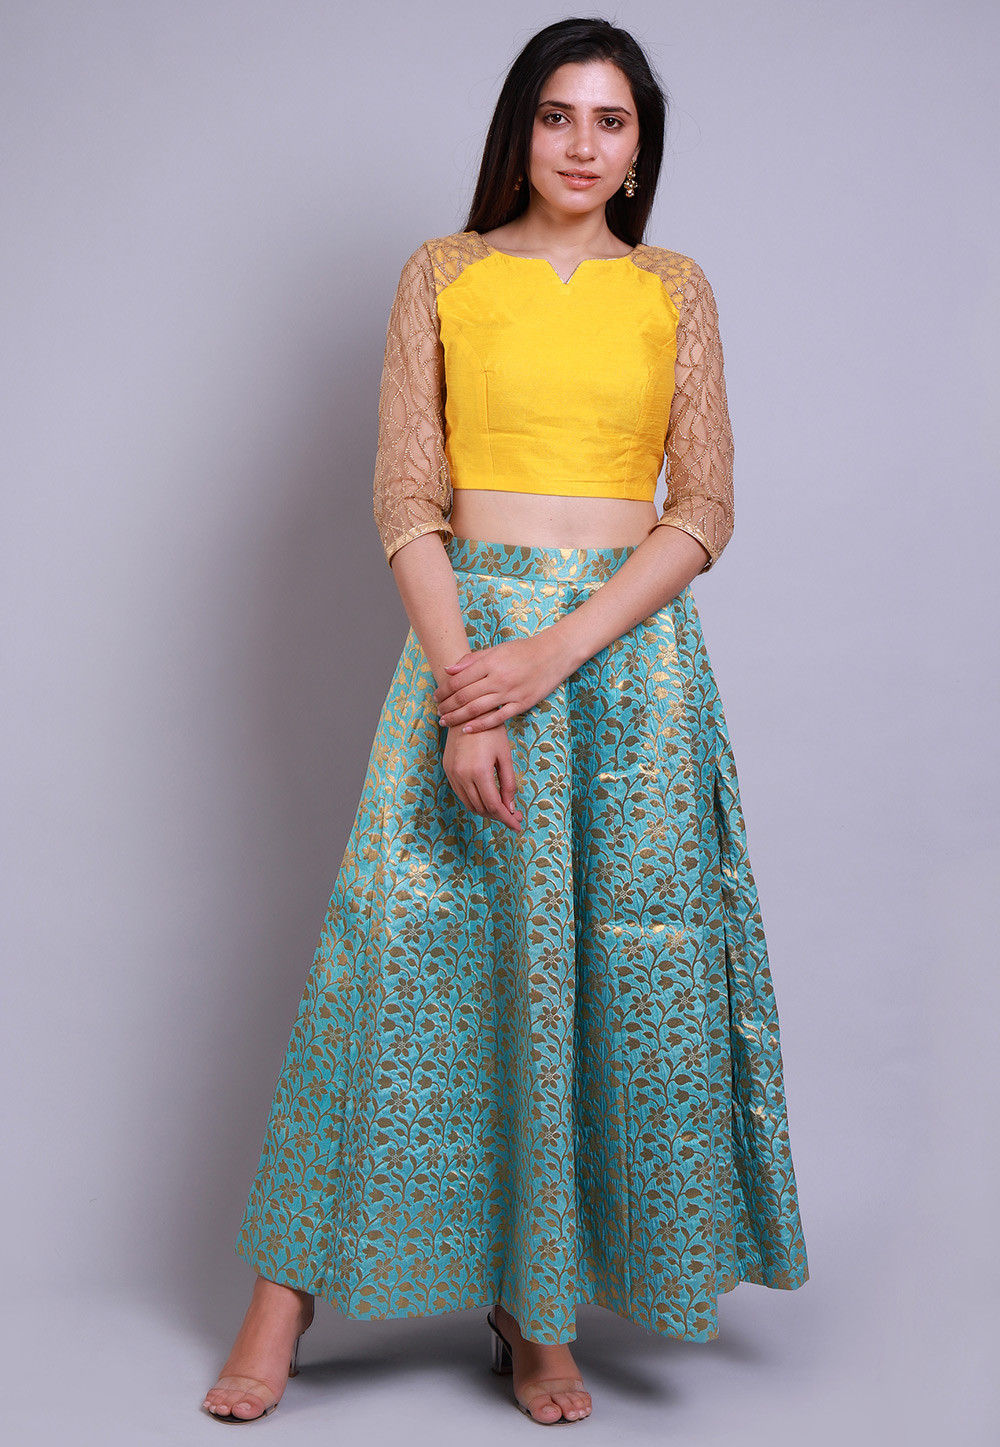 Readymade Skirt Ethnic Skirt for Women Designer Skirts Long Skirt Indian Stylish Banarasi Skirt Indian Skirt Ready to wear skirt